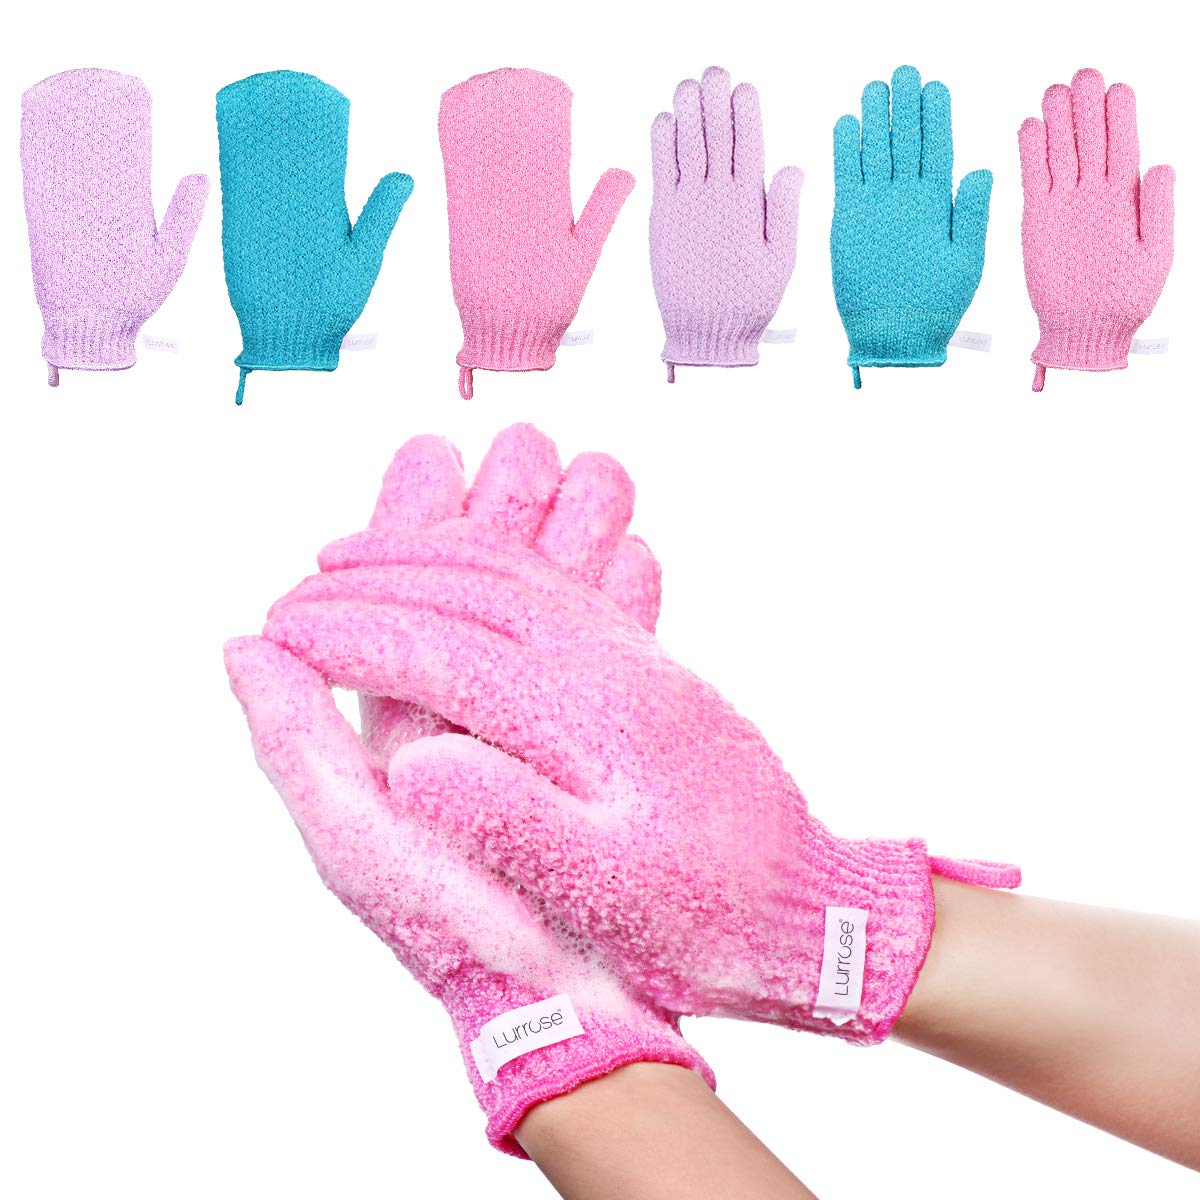 Peeling-Handschuhe Scrubbing Badehandschuhe doppelseitige Bathwater Scrubbing Massage Handschuhe für Männer Frauen Kinder,6 Paar